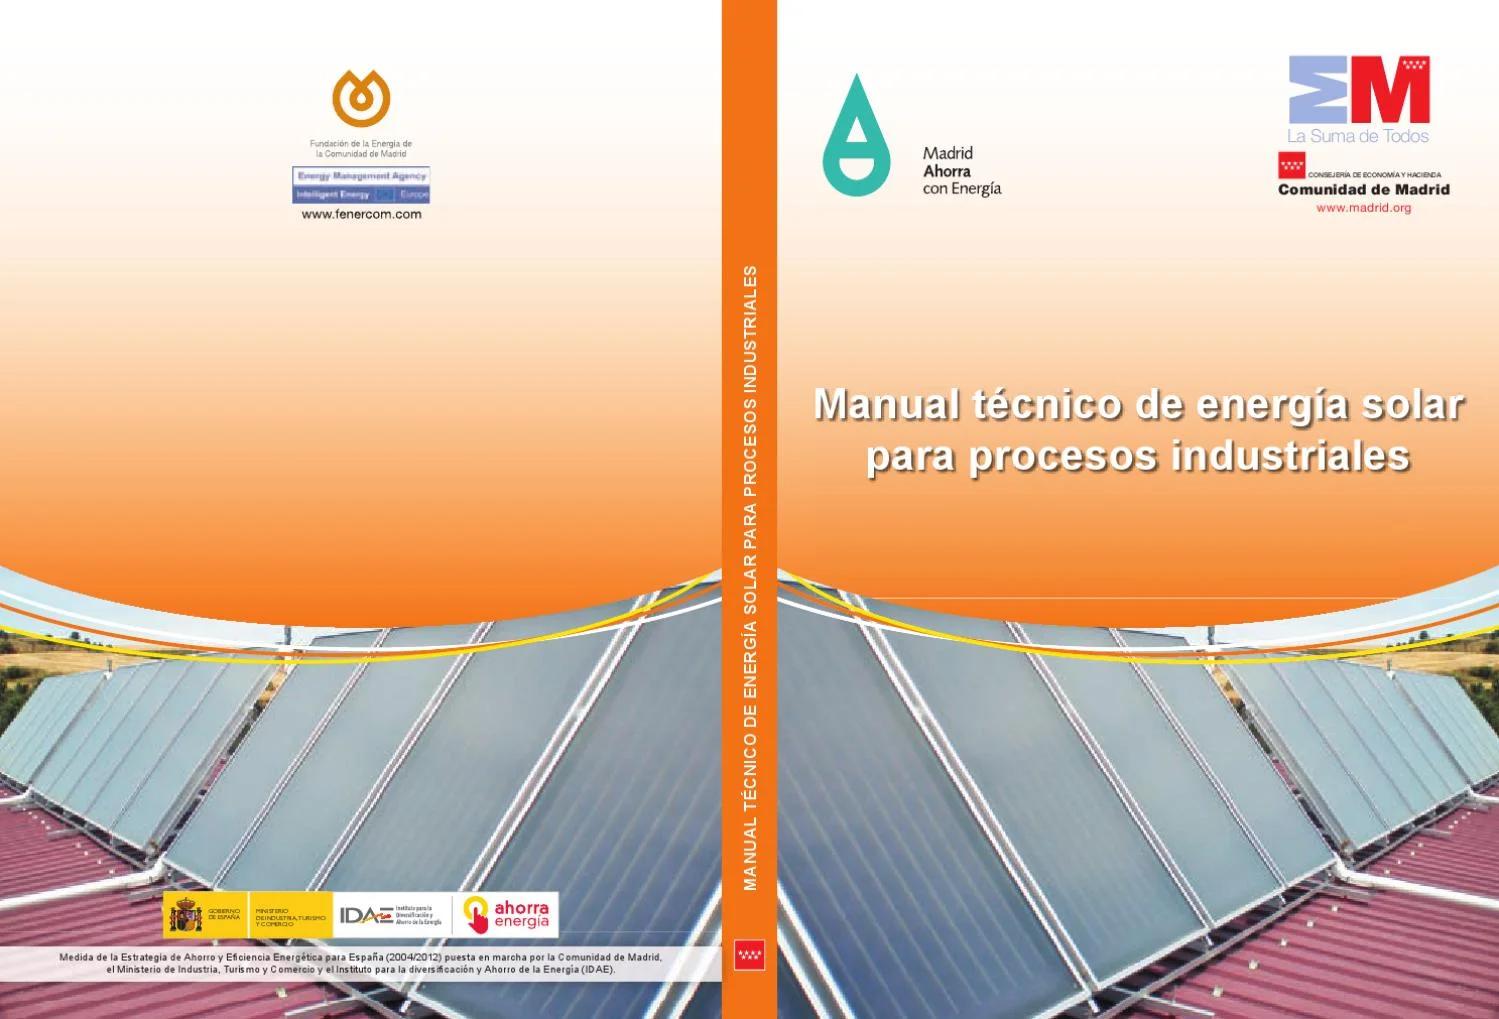 ministerio de industrio obligación de placa solar acs - Qué instalaciones están obligadas a la realización del mantenimiento